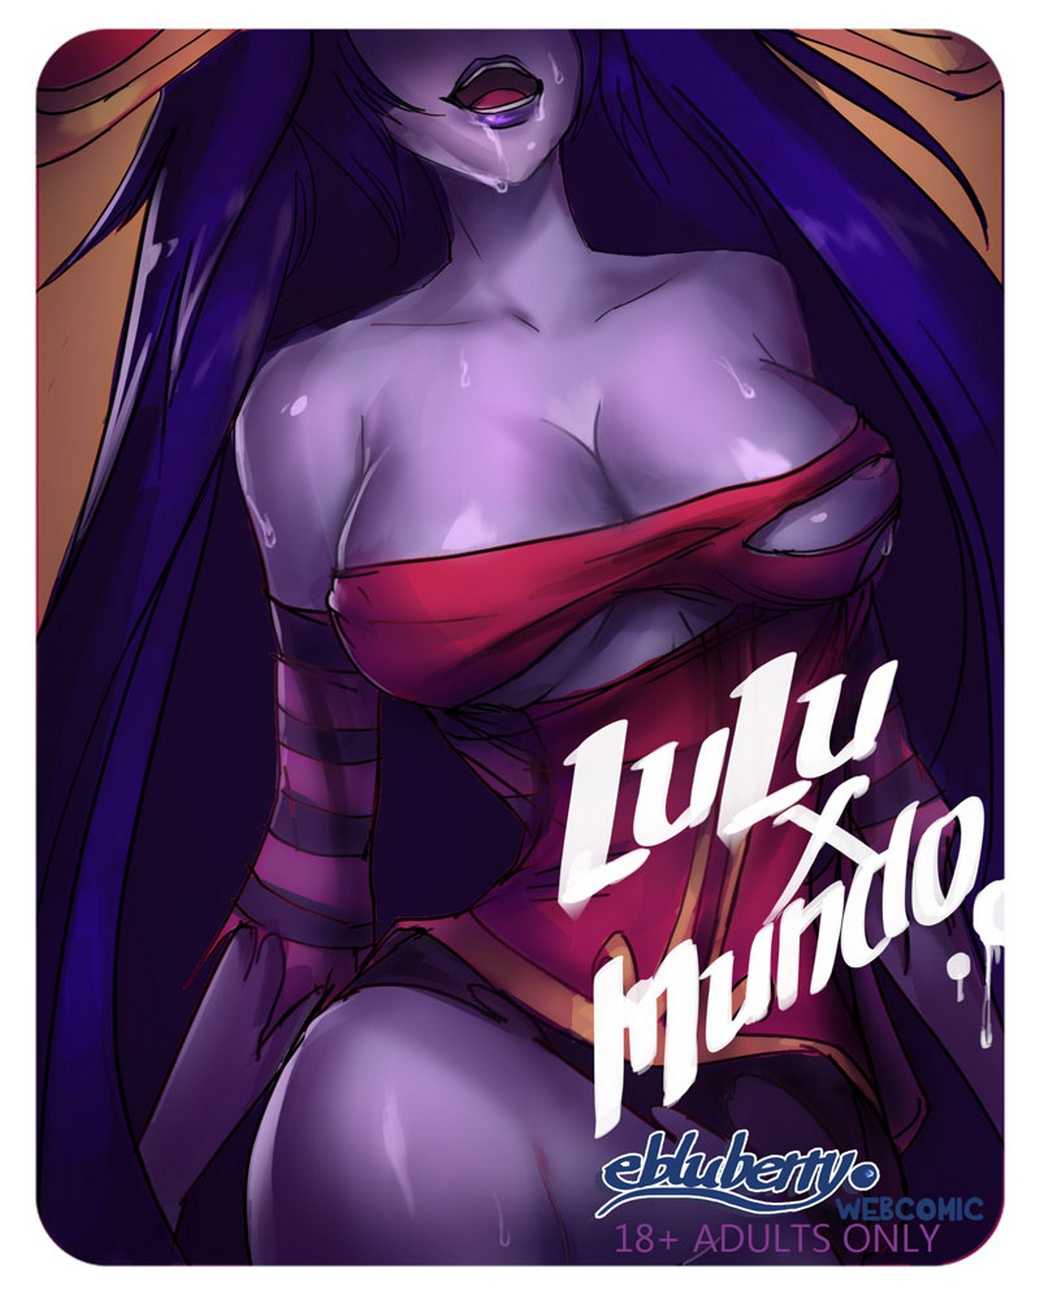 Lulu x Mundo page 1